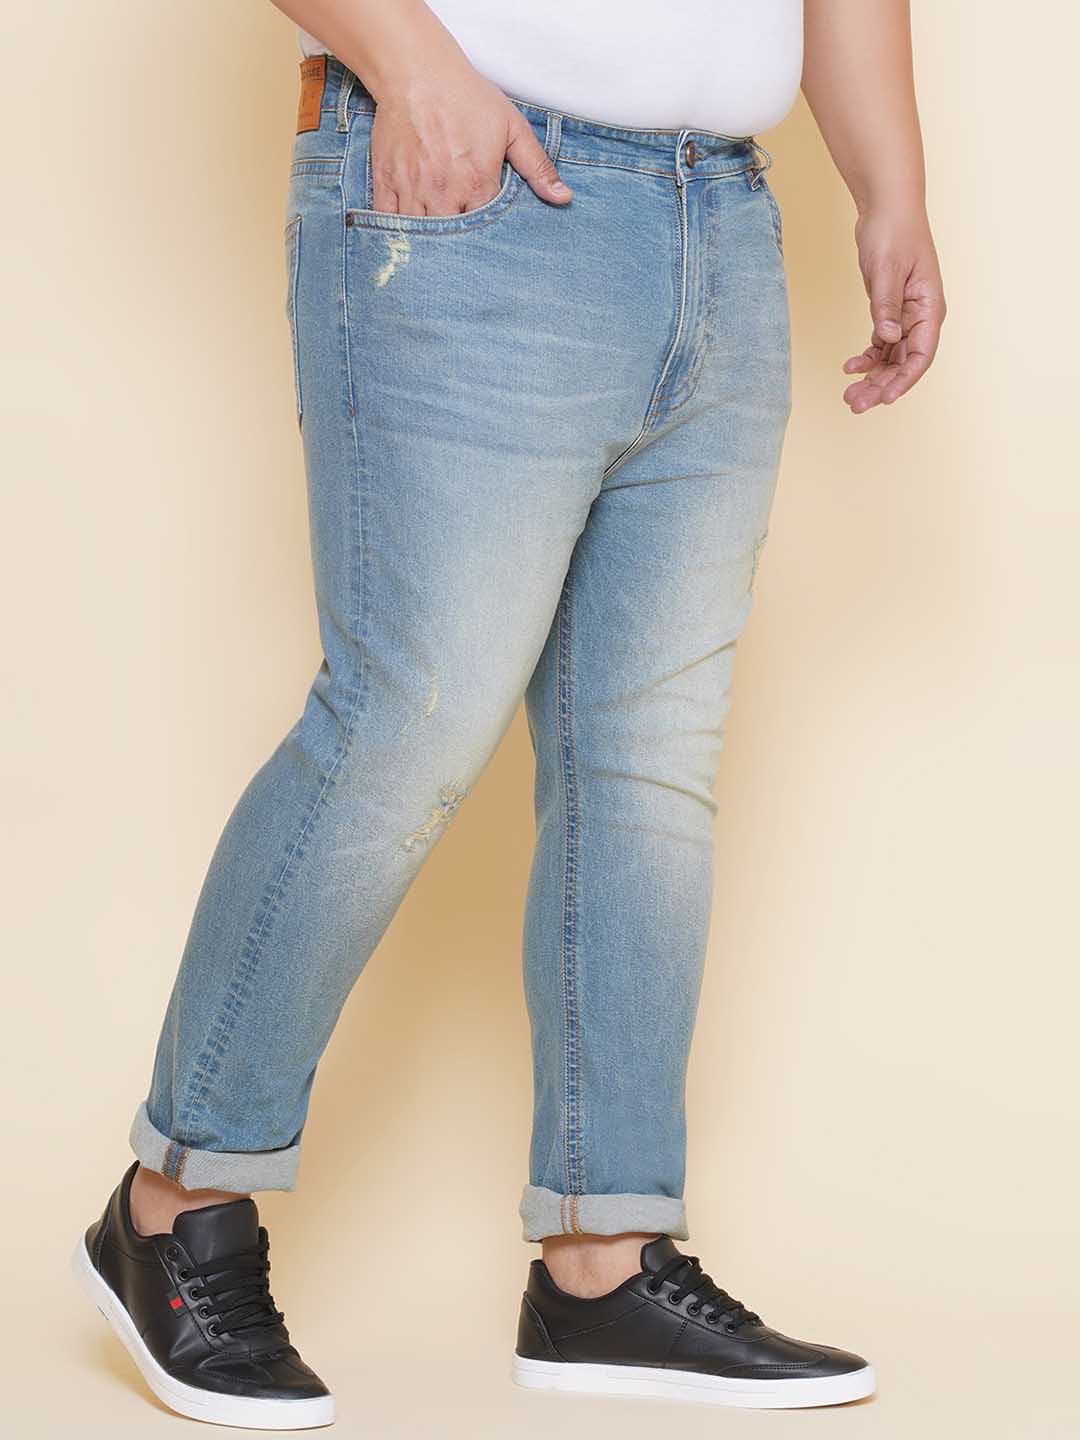 bottomwear/jeans/EJPJ25141/ejpj25141-3.jpg